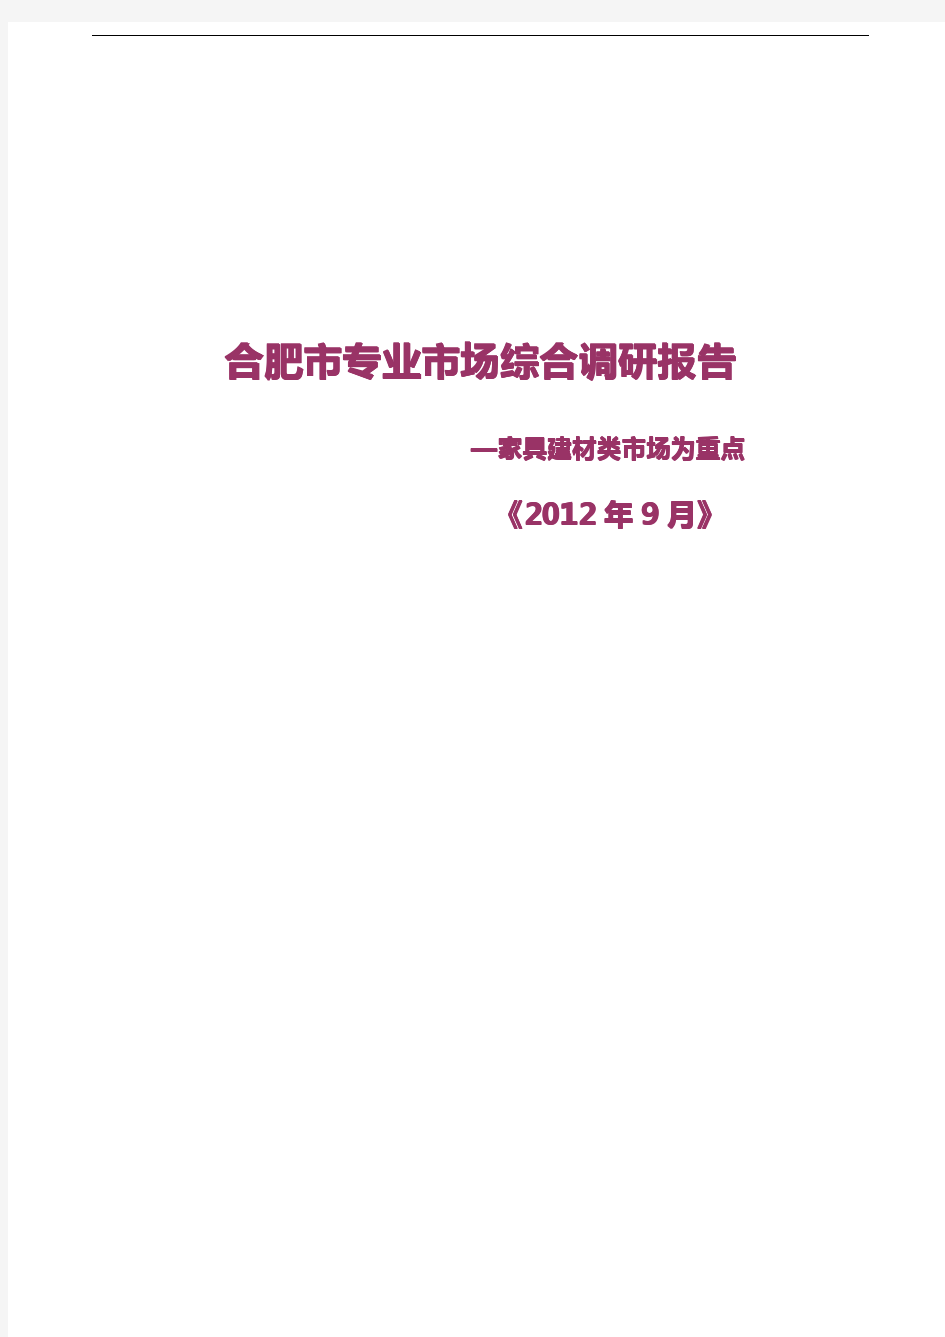 20120922合肥市家居建材类专业市场综合调研报告(排版稿)